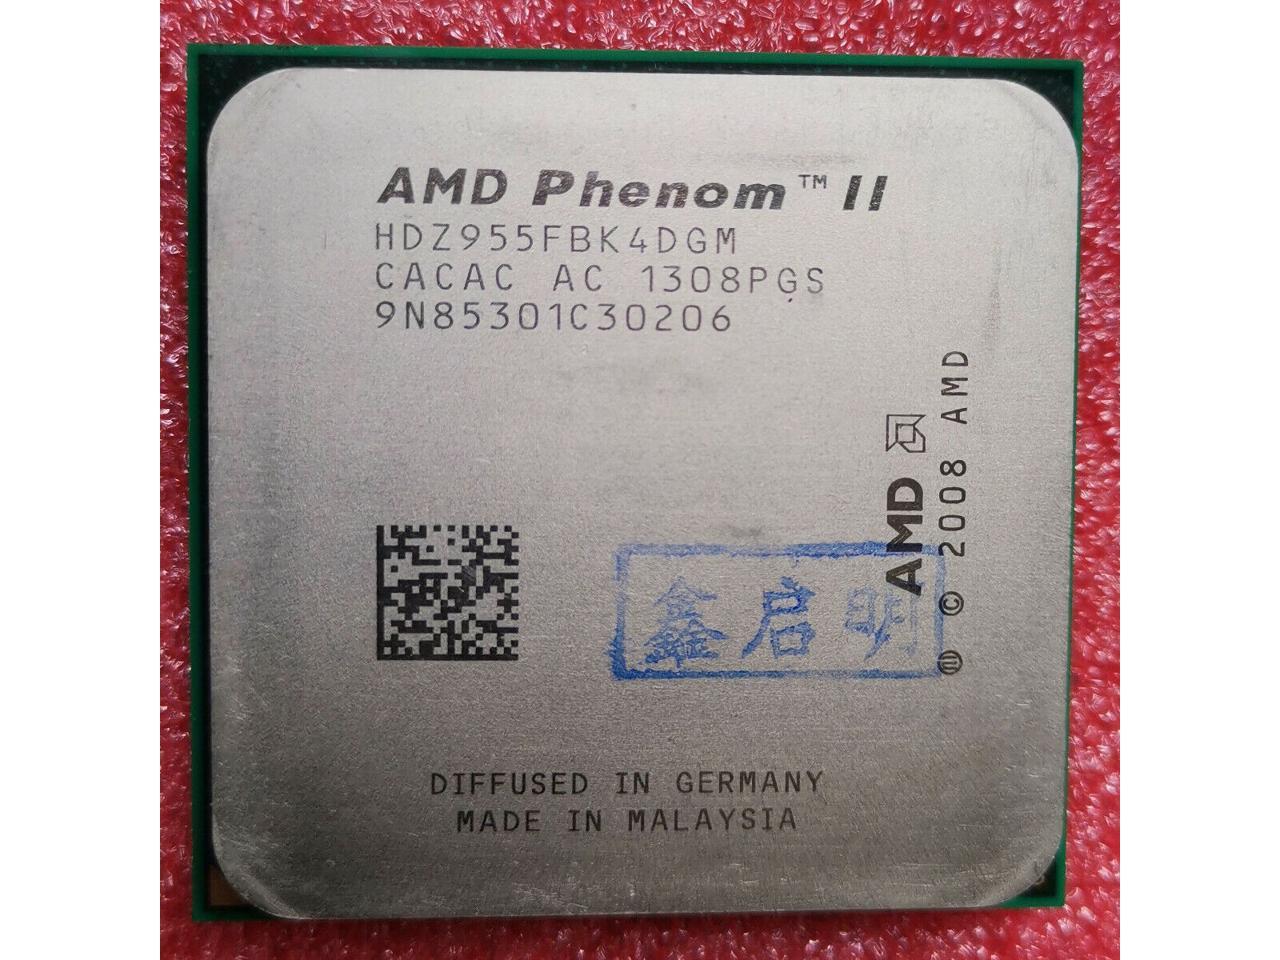 AMD Phenom II X4 955 Black Edition 3.2GHz 4x512KB L2/6MB L3 Socket AM3 125W Quad-Core CPU